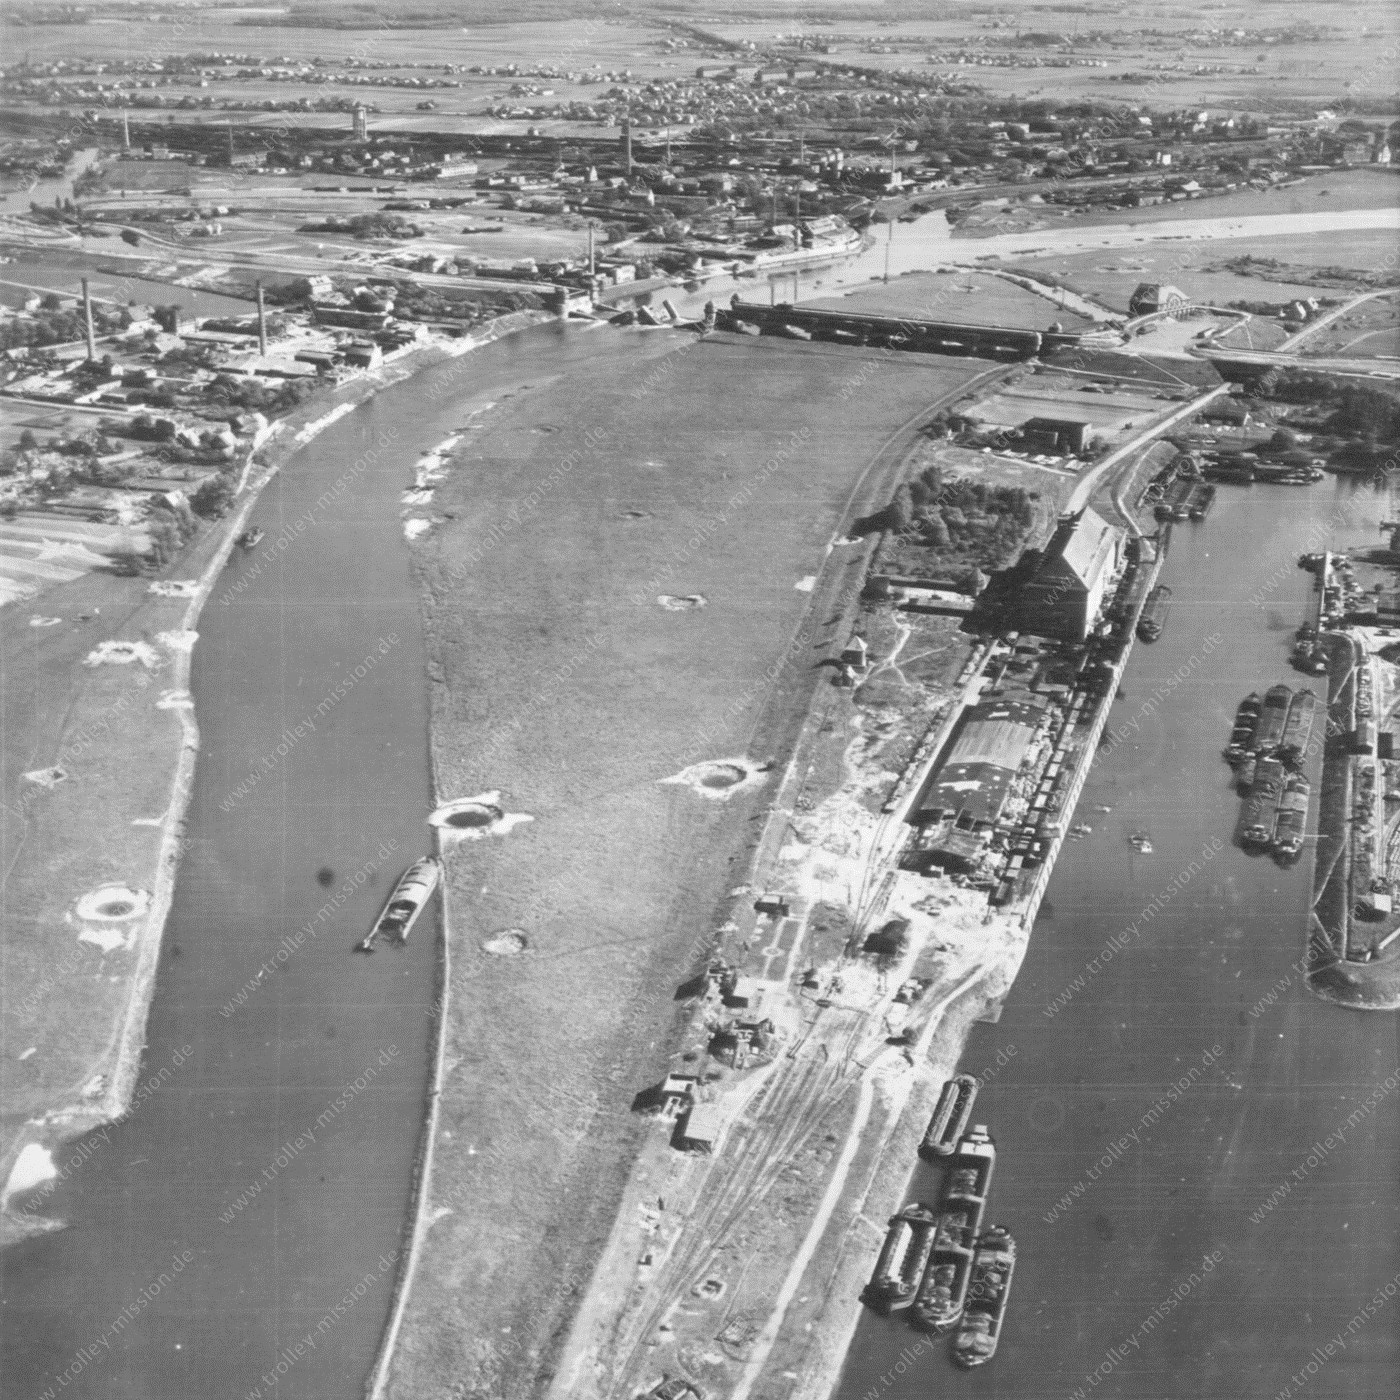 Minden Wasserstraßenkreuz 1945 - Luftaufnahme des zerstörten Mittellandkanal